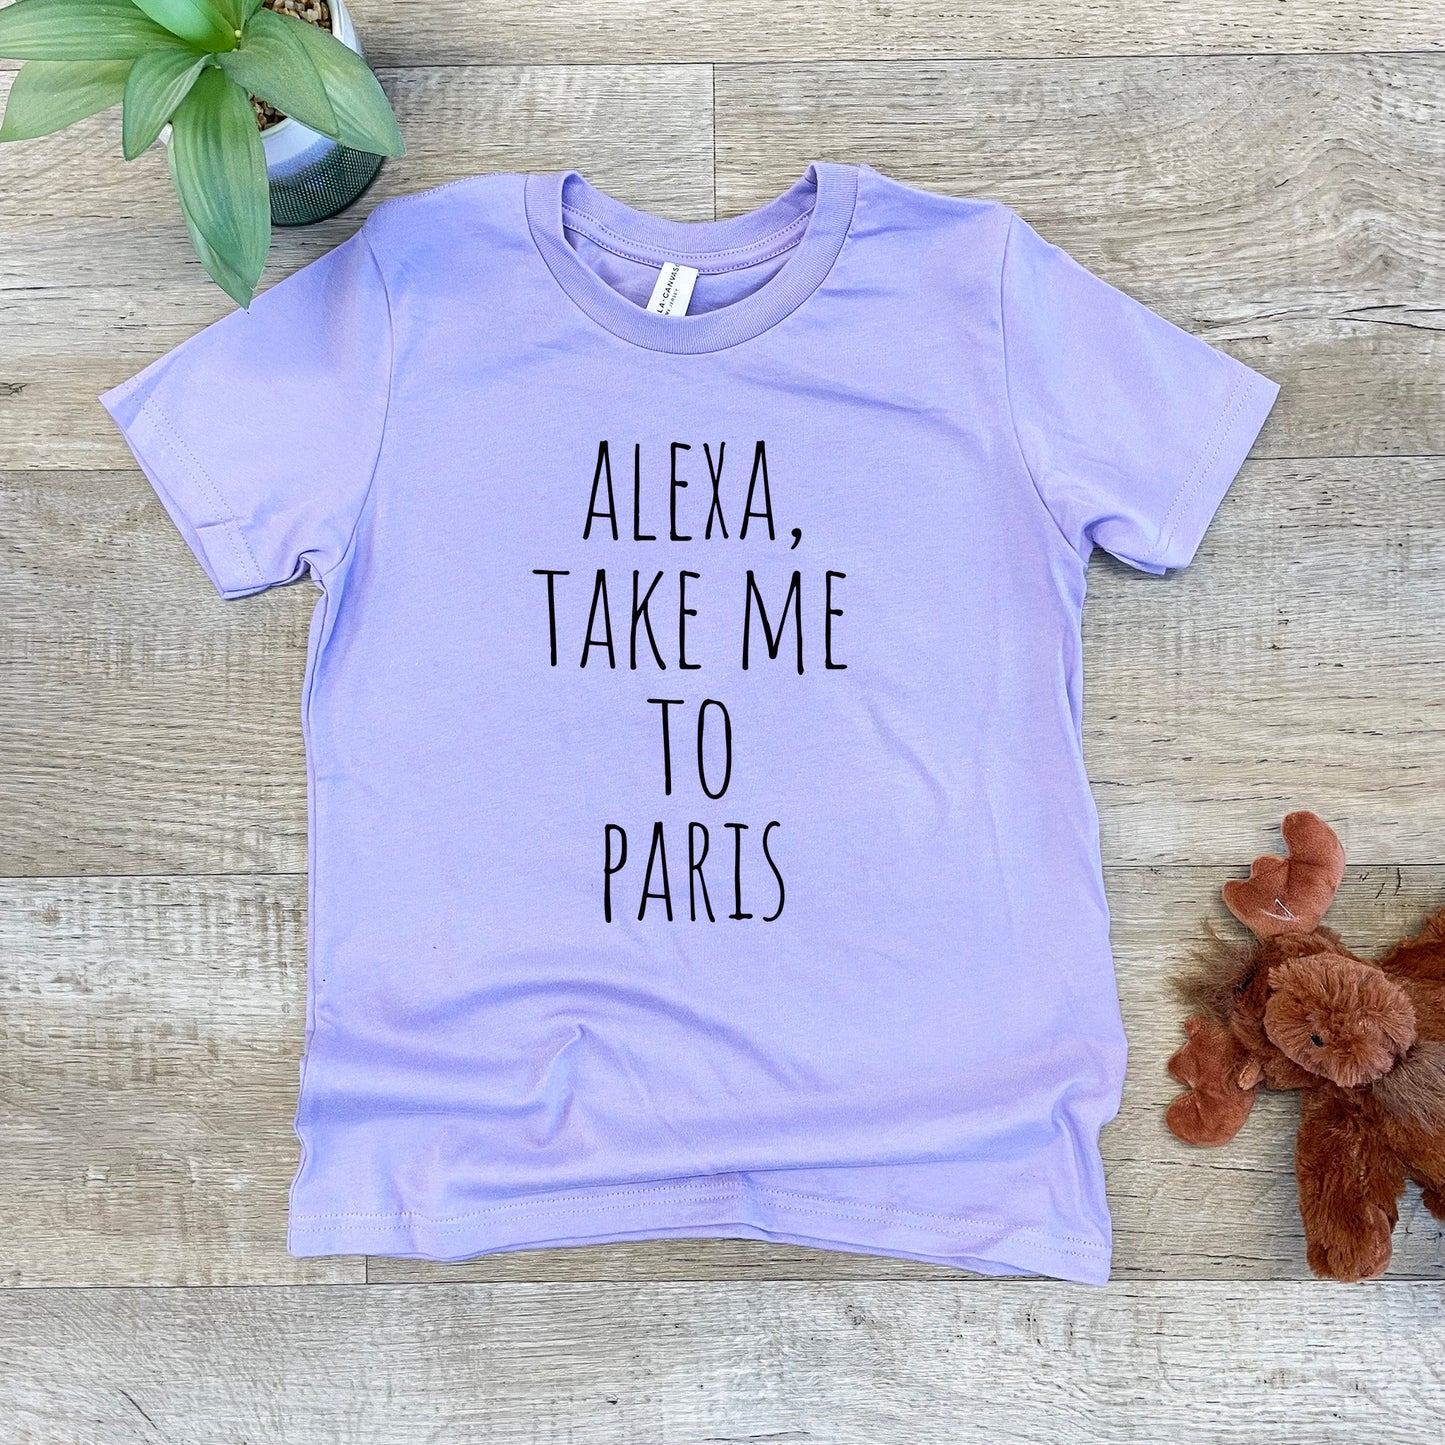 Alexa, Take Me To Paris - Kid's Tee - Columbia Blue or Lavender